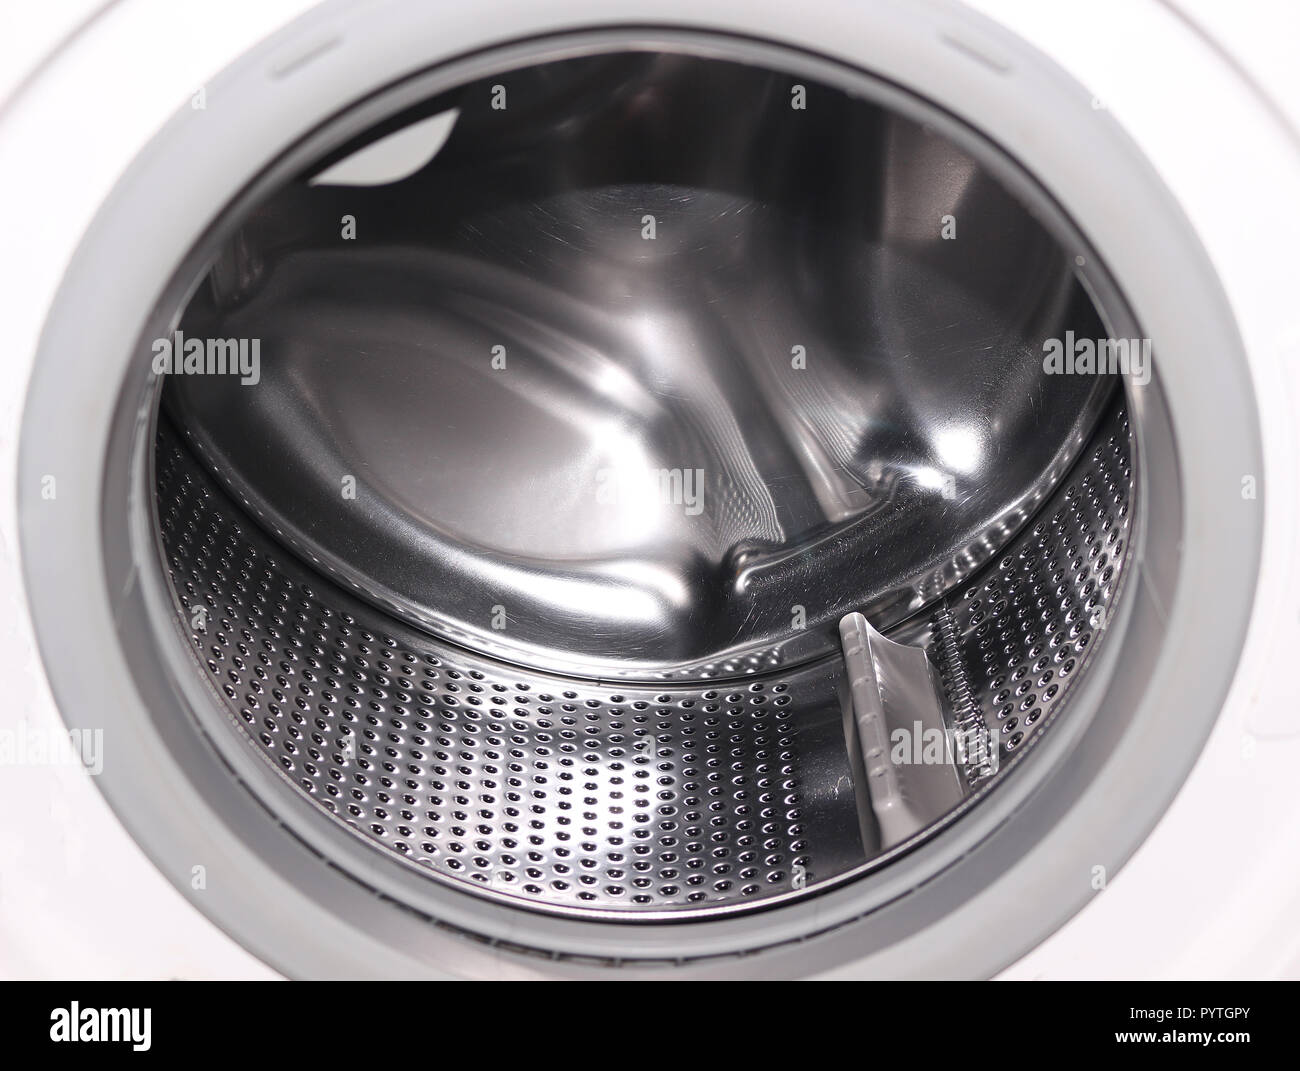 Waschmaschine trommel -Fotos und -Bildmaterial in hoher Auflösung – Alamy